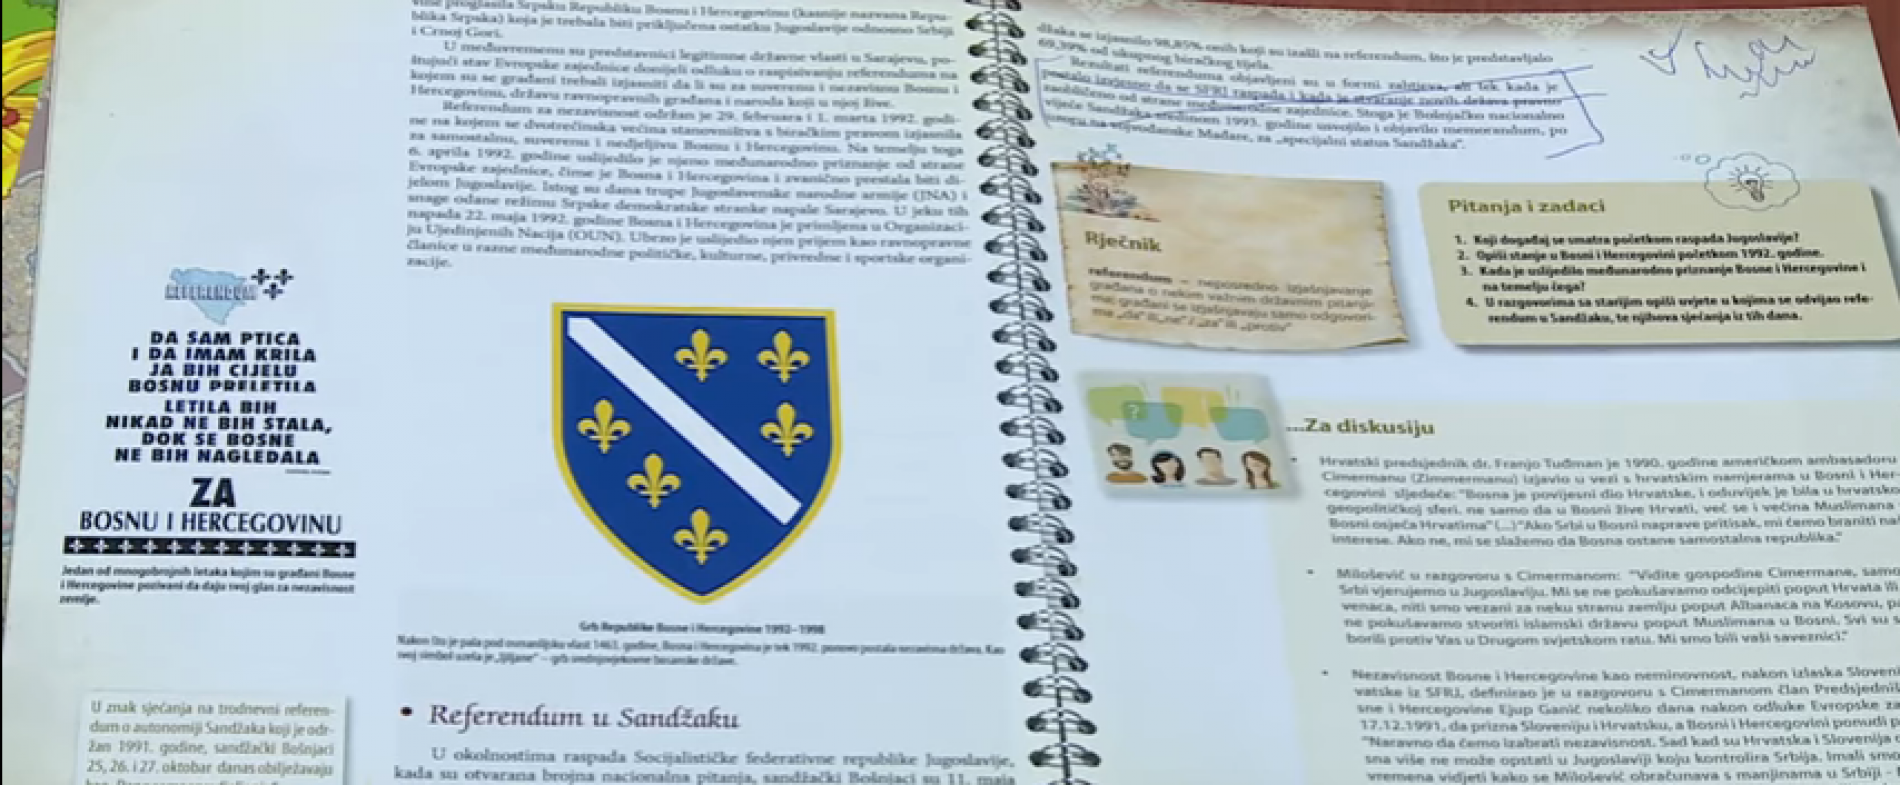 U Srbiji zaustavljeno izdavanje udžbenika na bosanskom jeziku: Beogradu smeta spominjanje bosančice, Crkve bosanske, bosanskih kraljeva, Sandžaka… (Video)